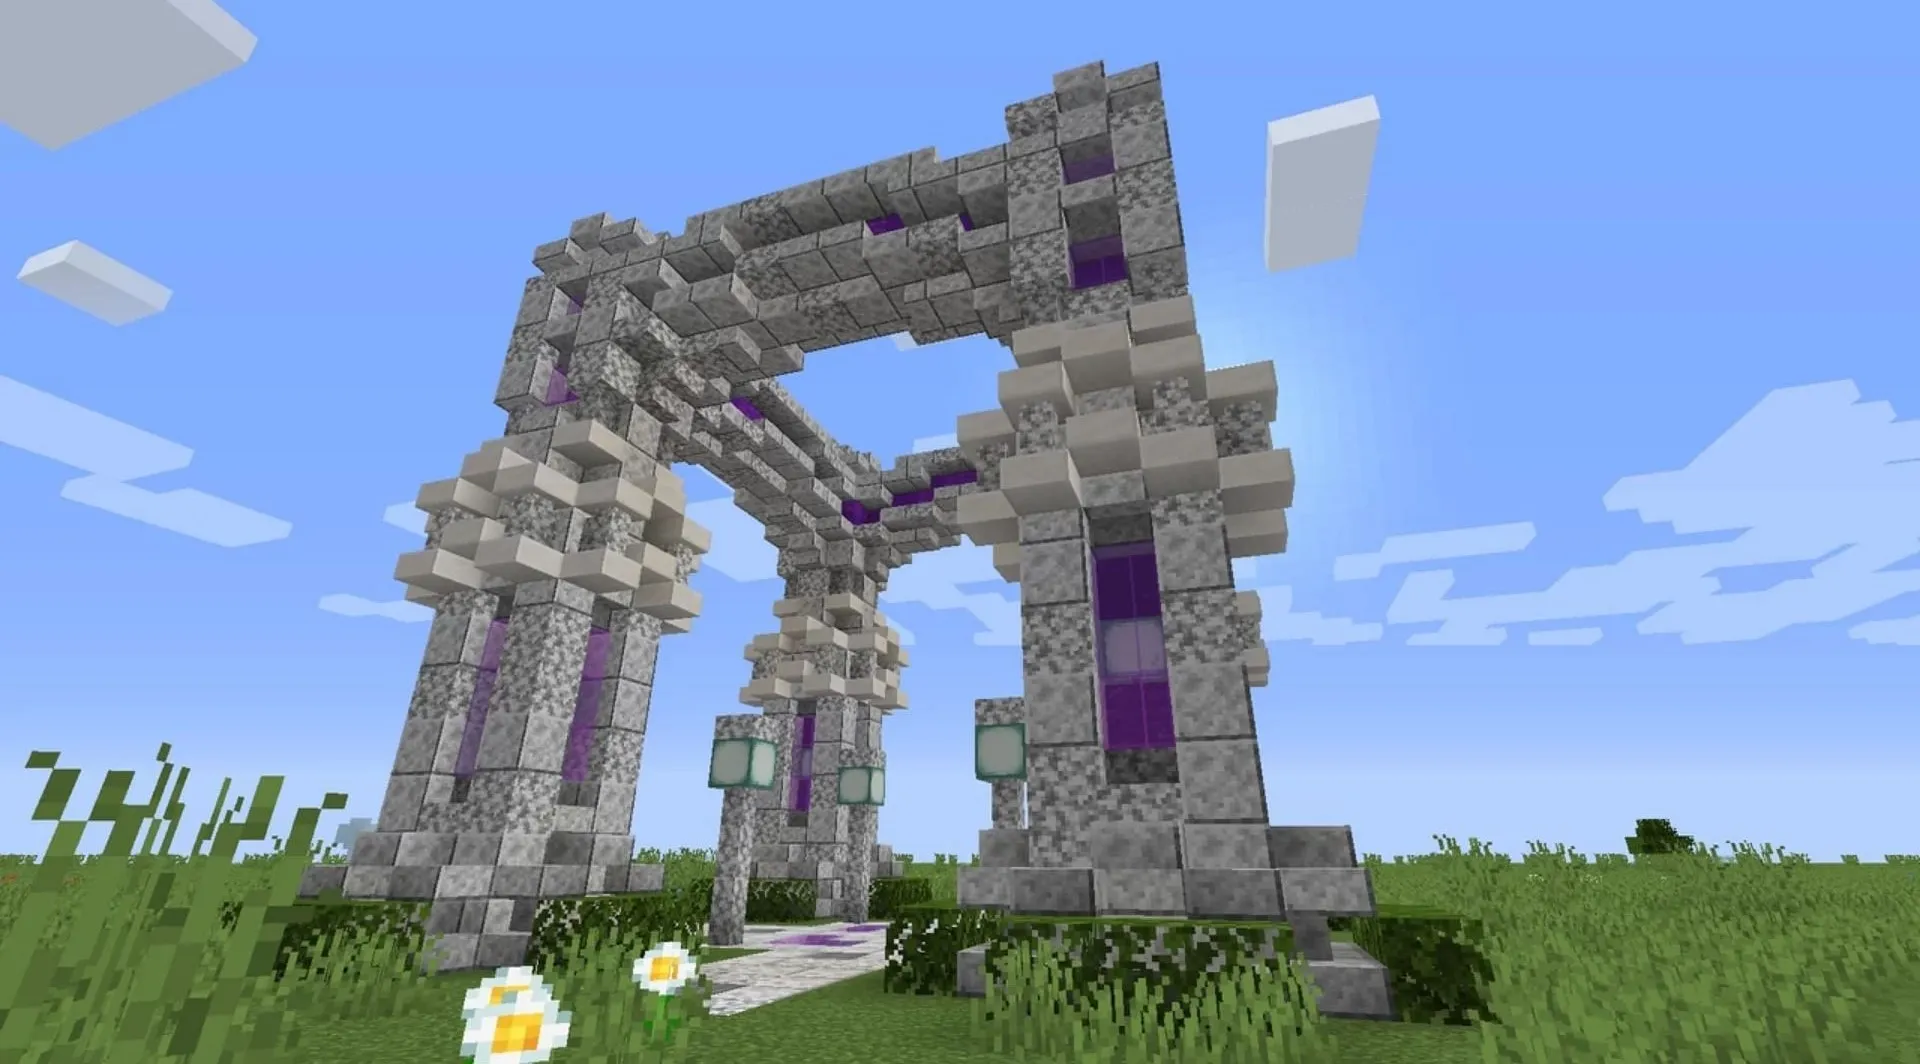 10 thiết kế cổng vòm độc đáo dành cho bạn trong Minecraft